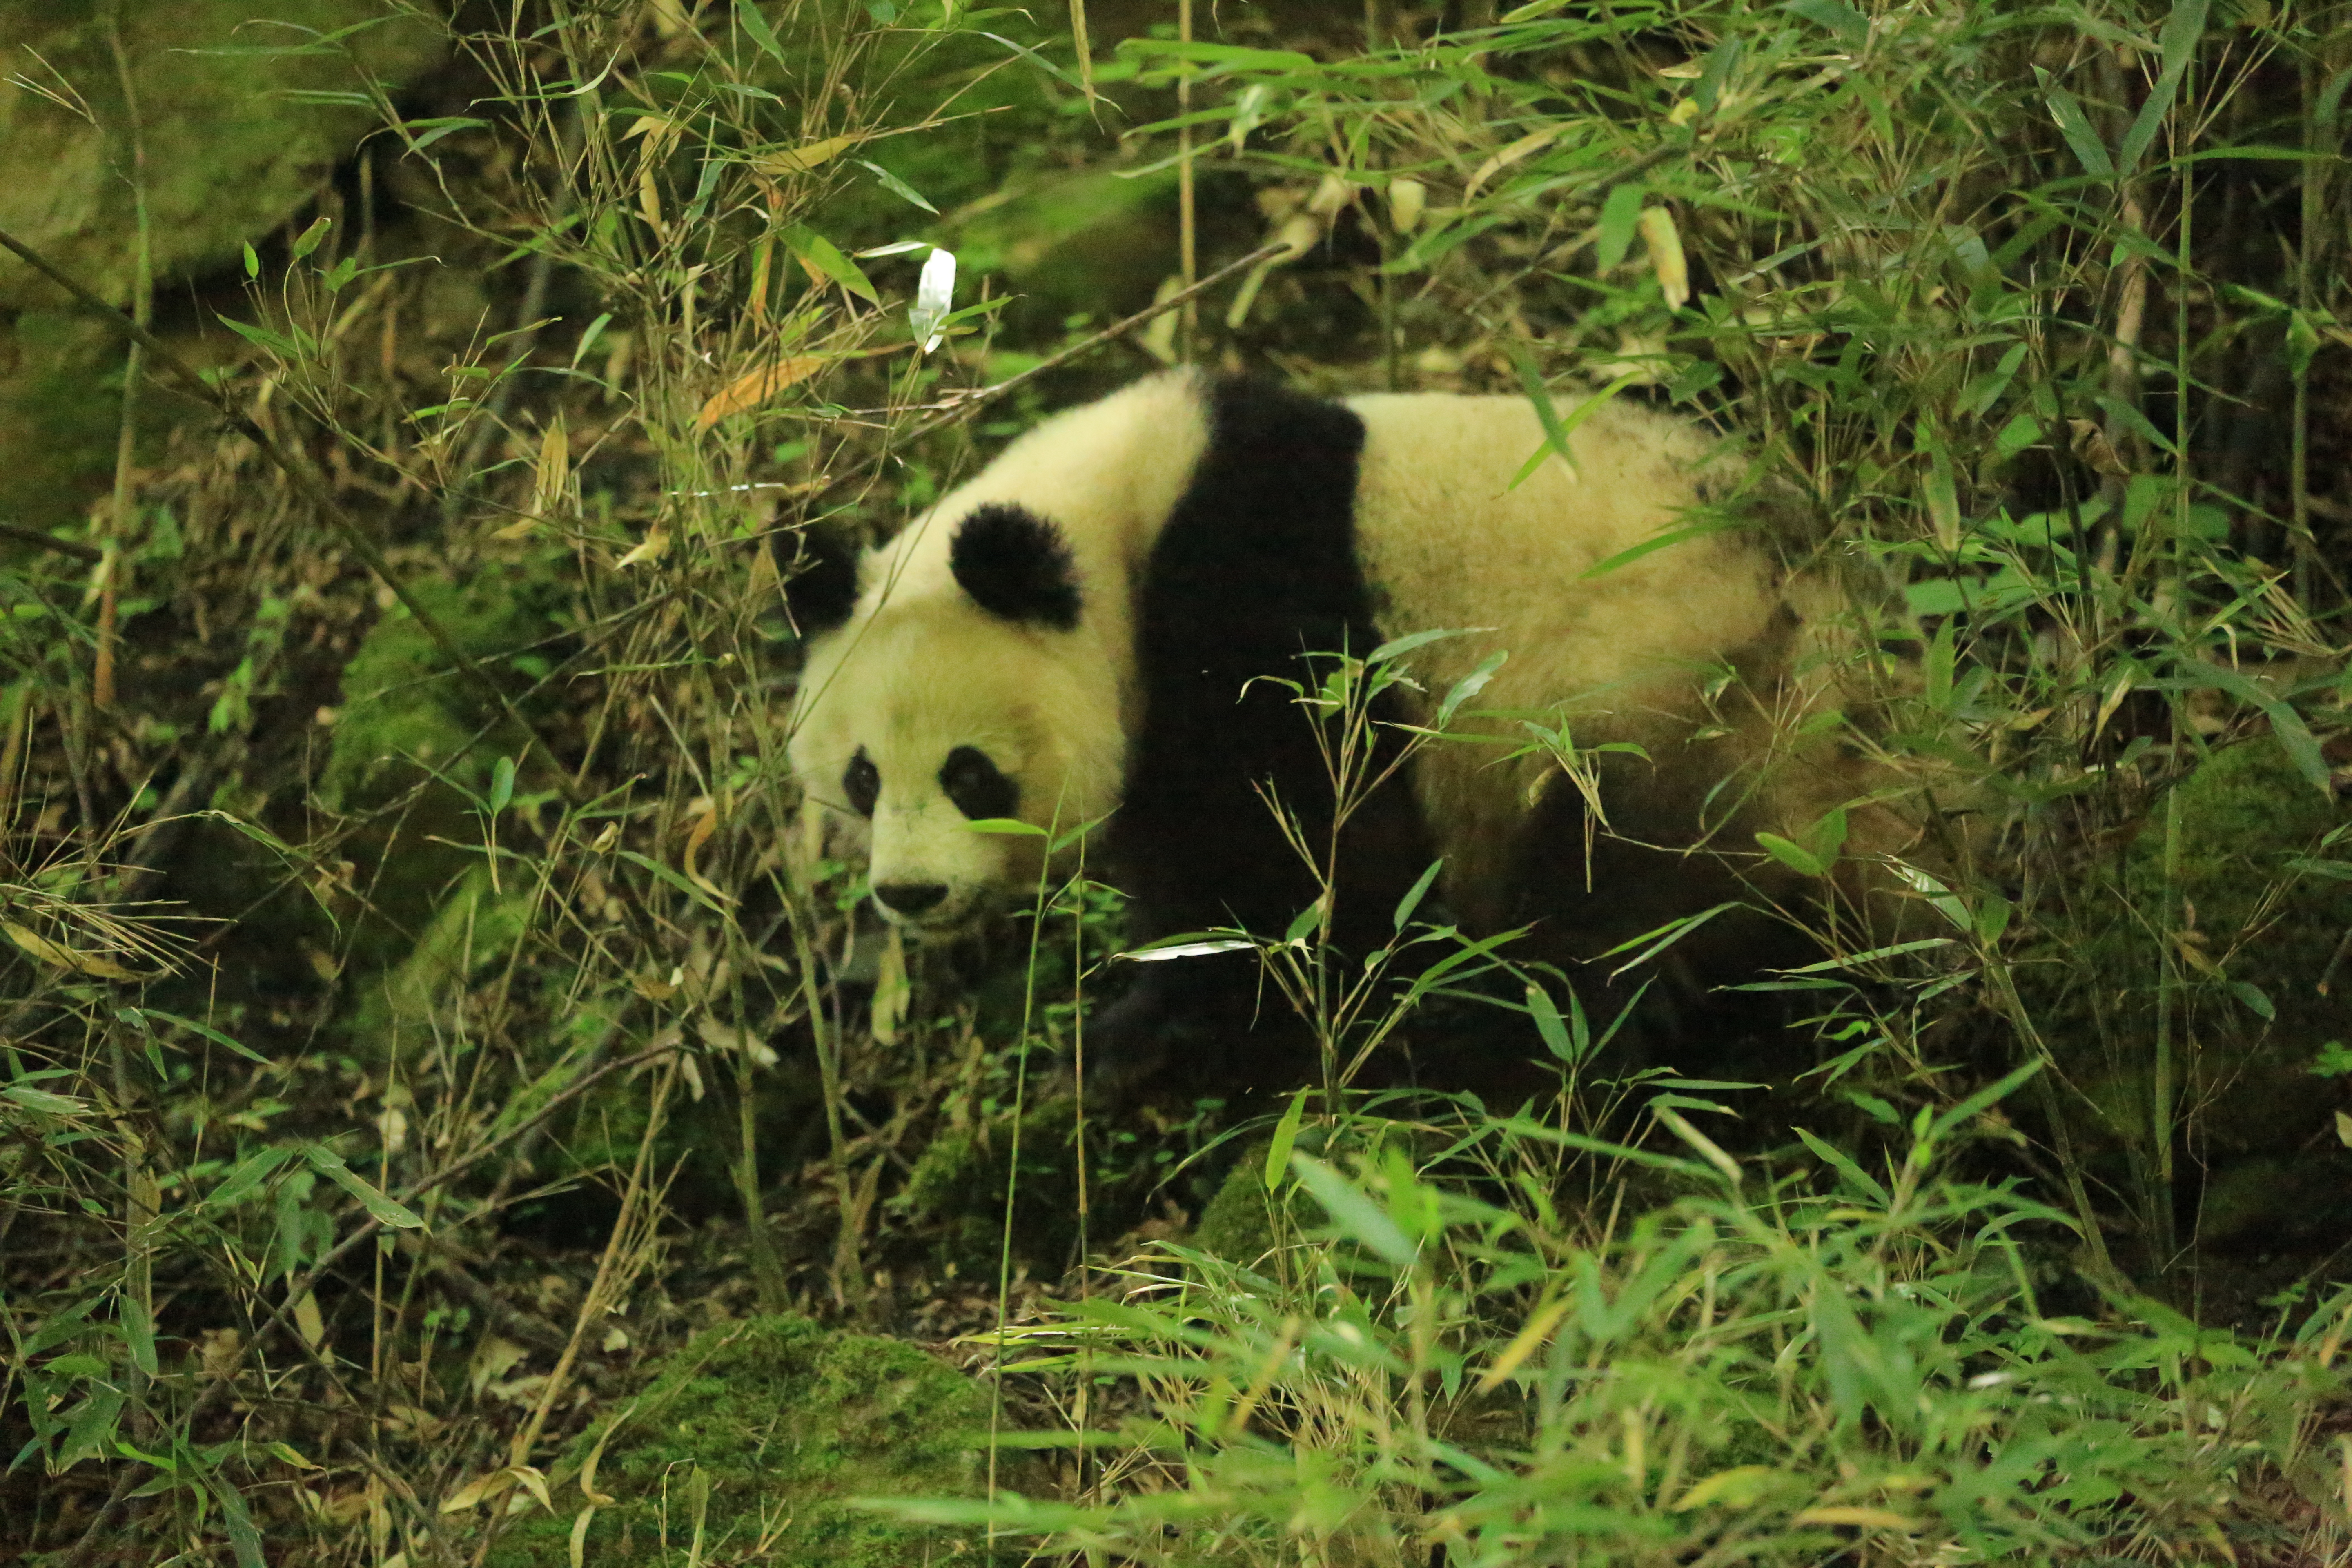 陕西省太白林业局巡护监测中偶遇一只野生大熊猫